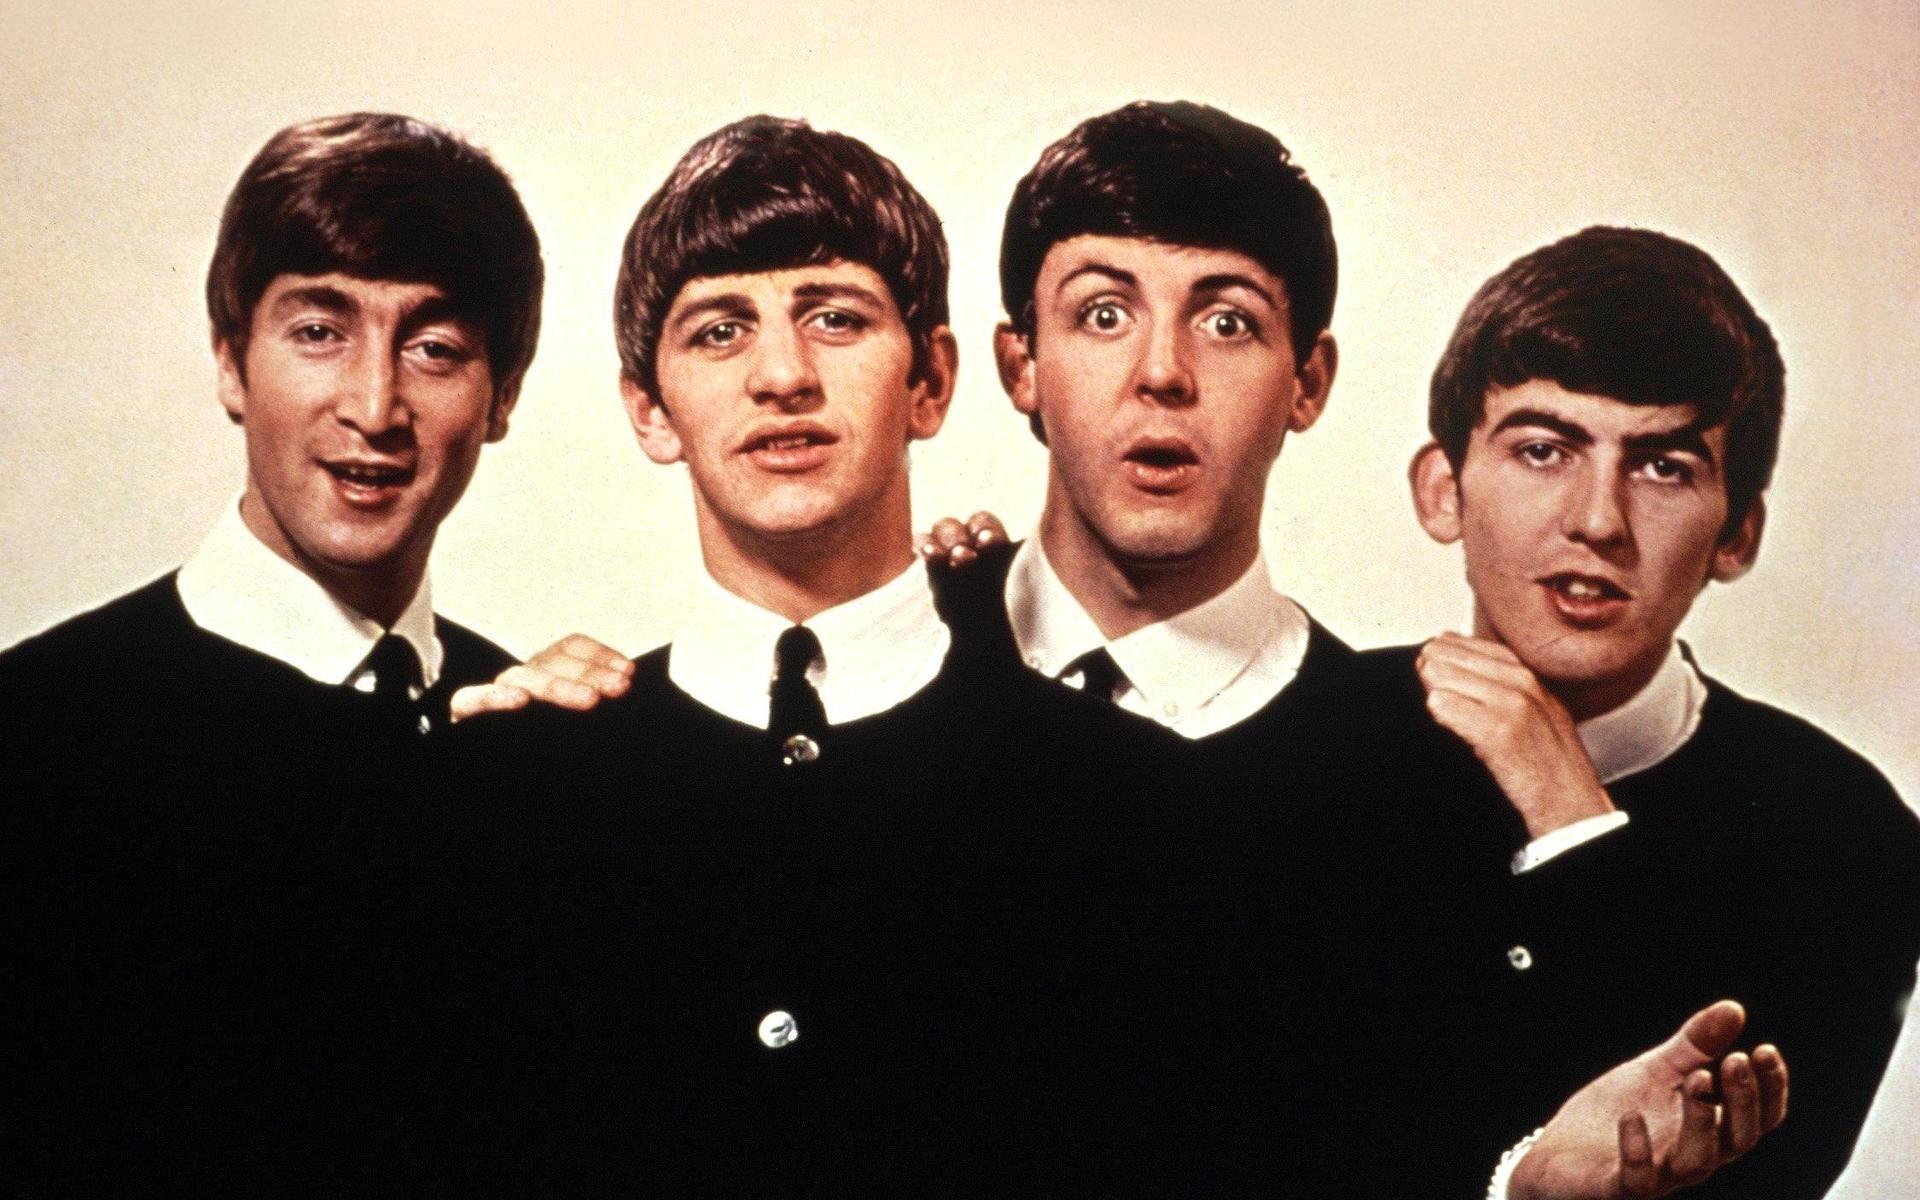 The Beatles skapades ur kulturell och etnisk mångfald, menar Peter LeMarc.